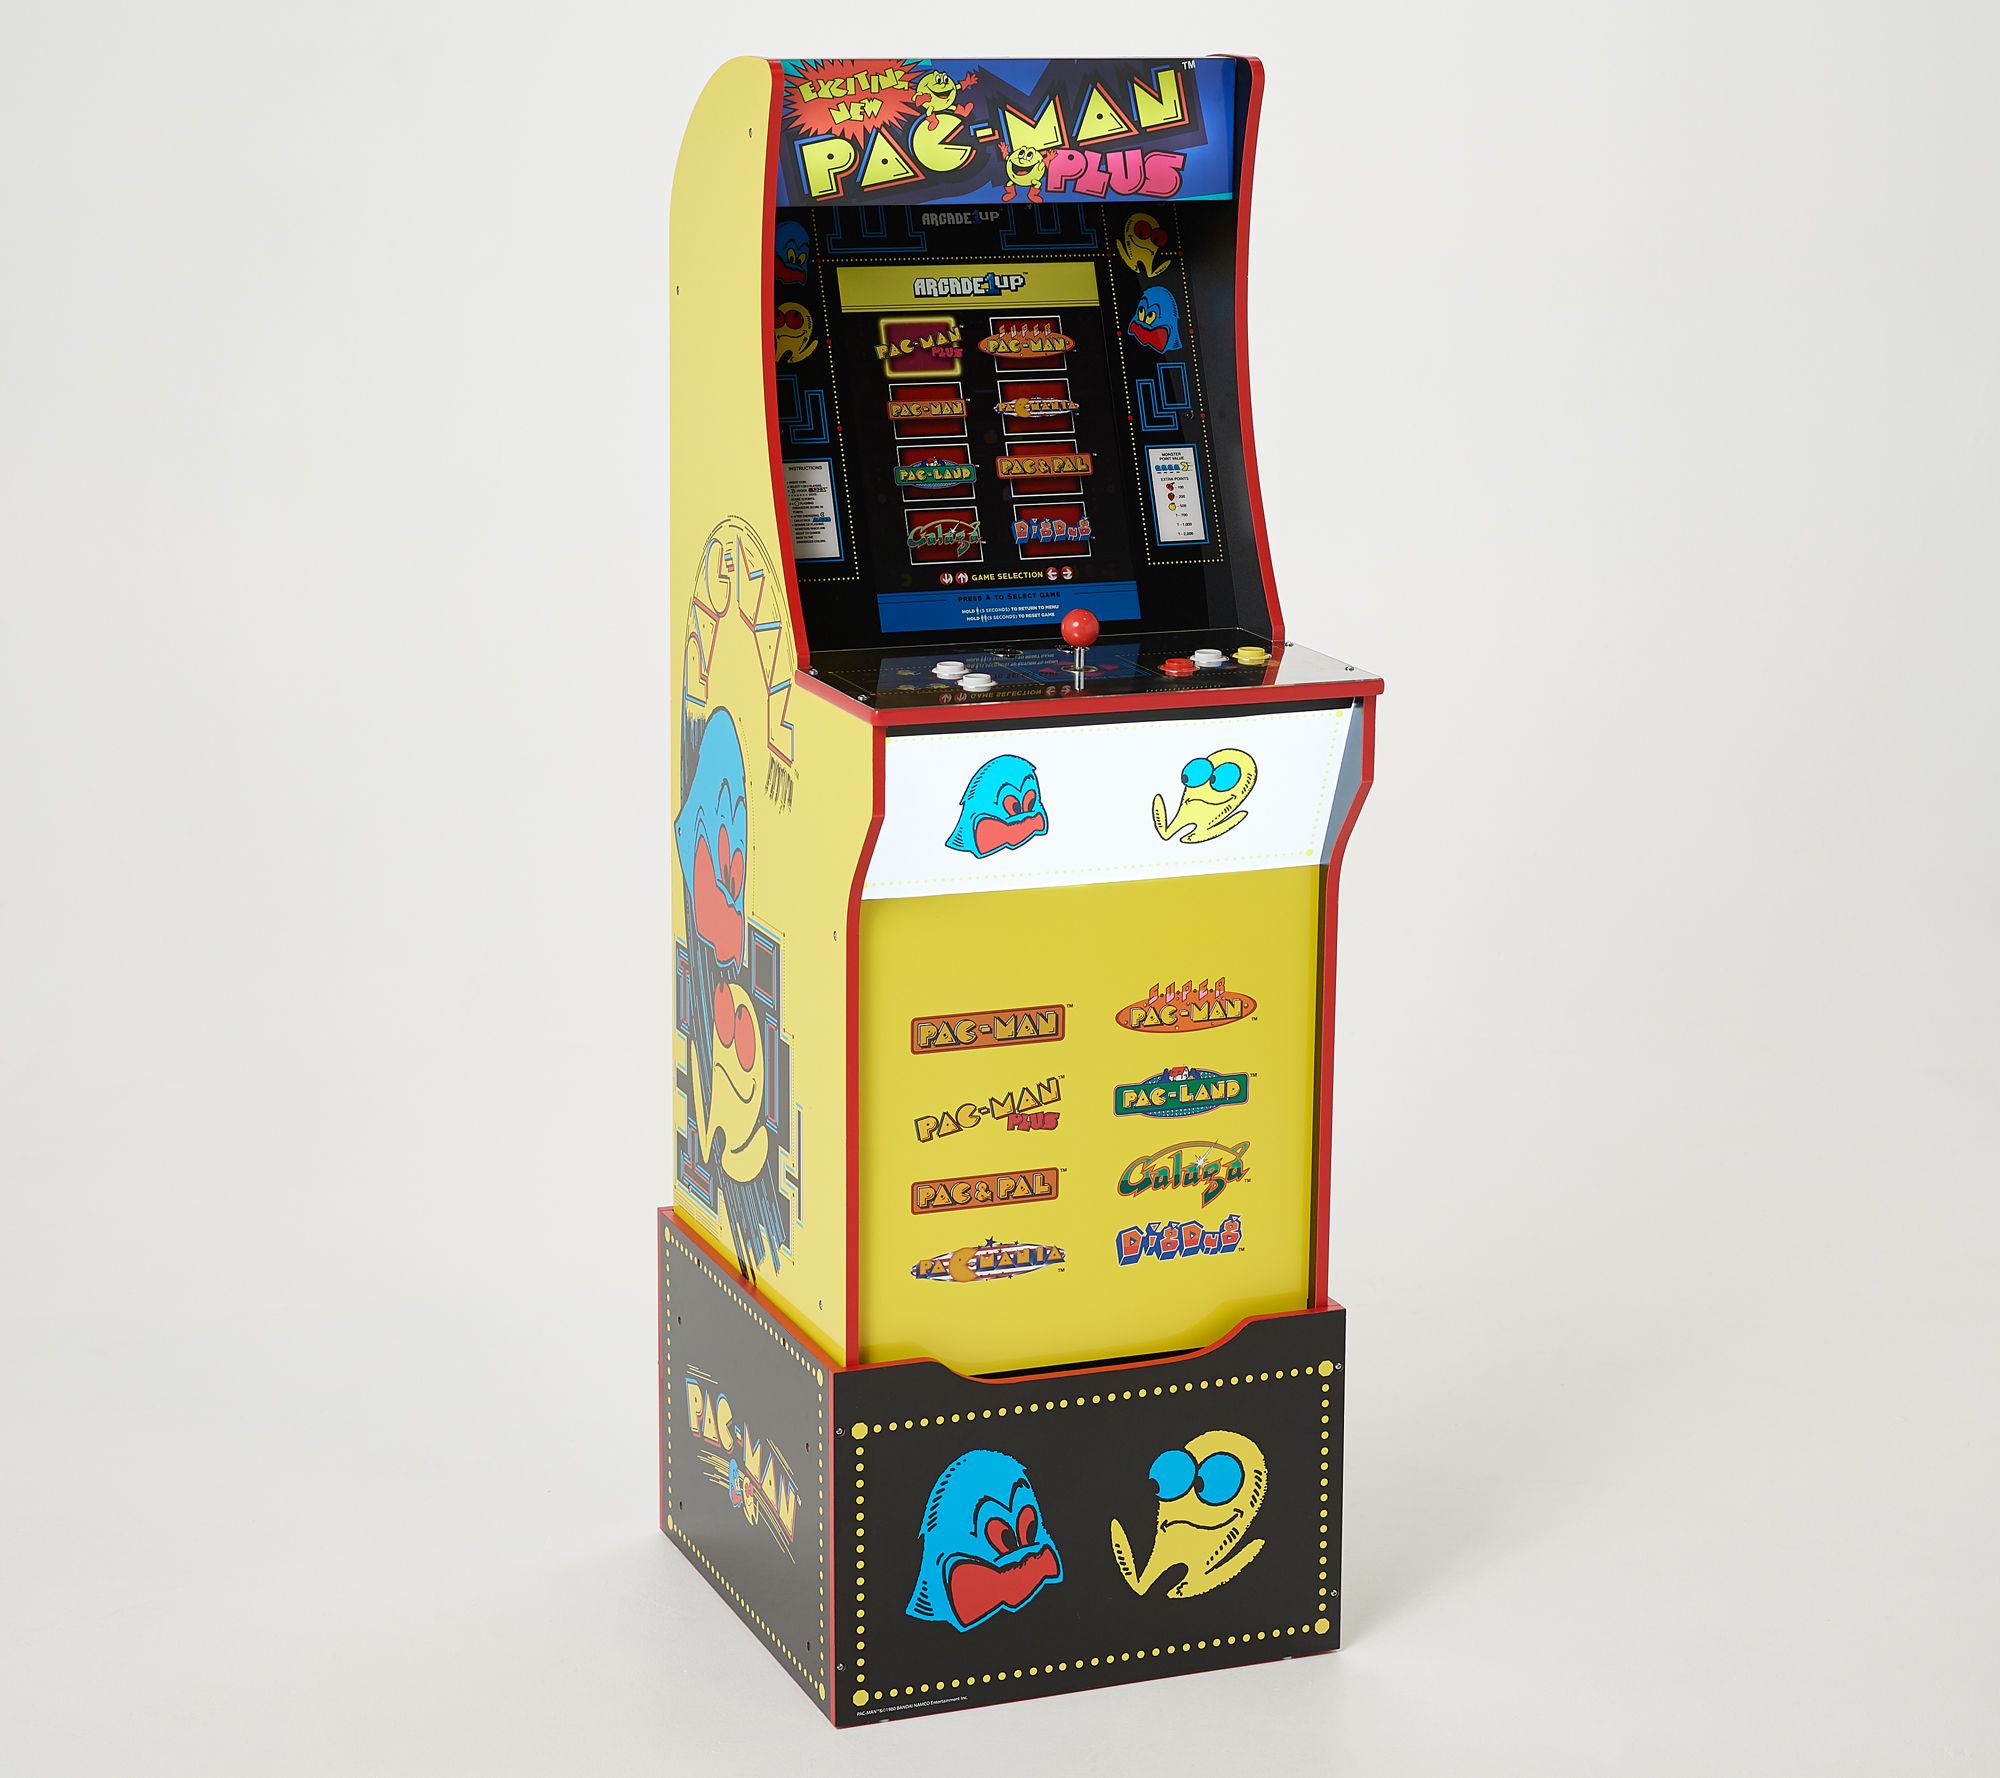 pacman arcade machine